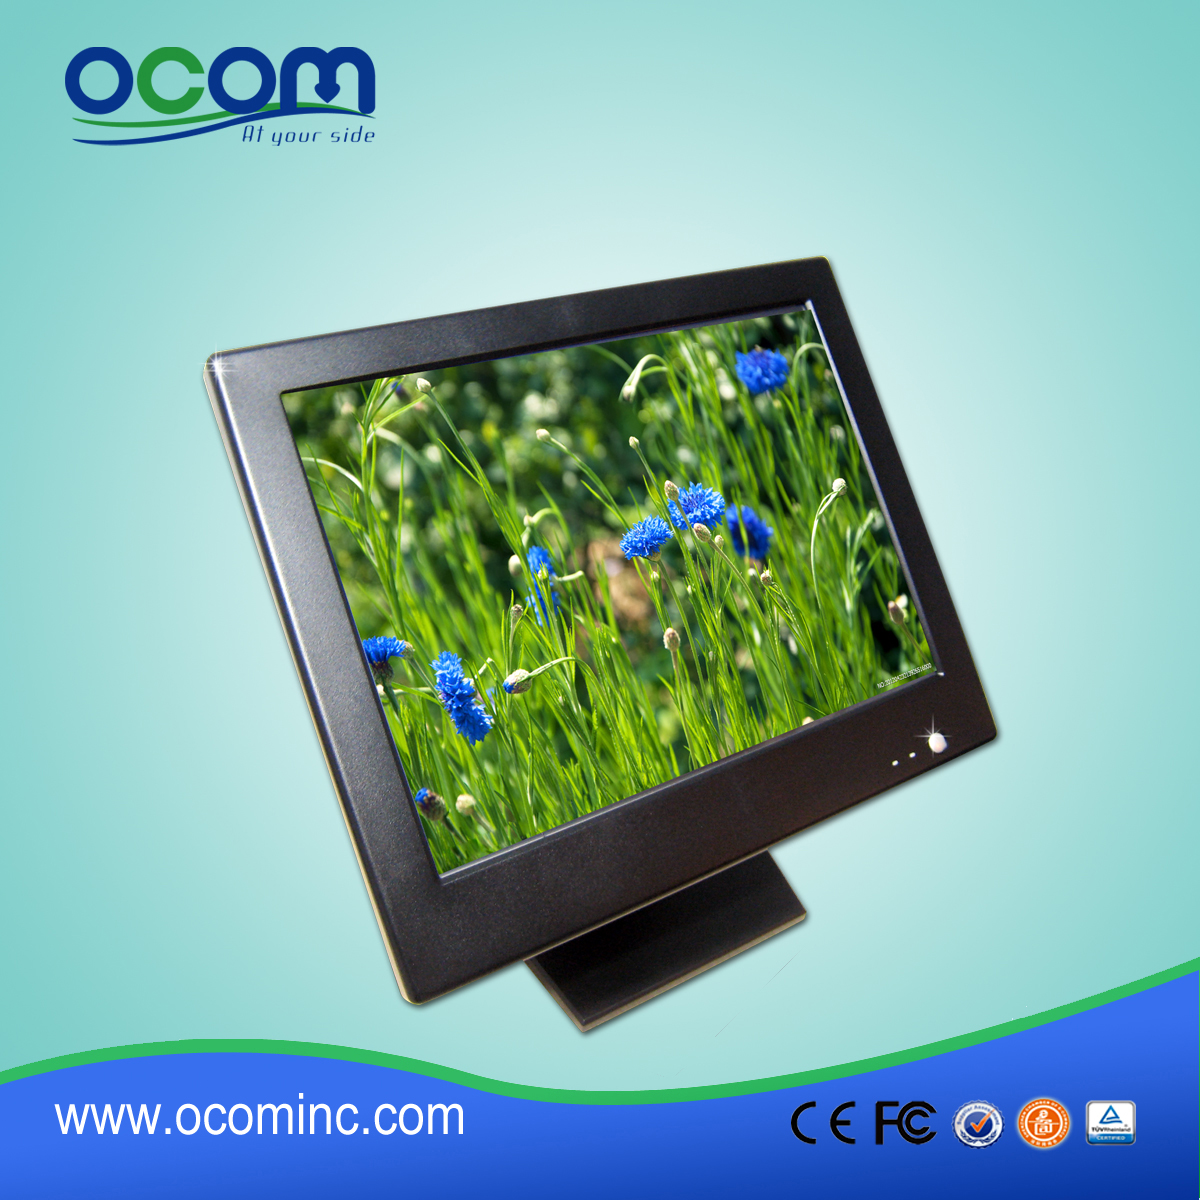 TM1502 Wysoka jasność tanie LCD Monitor dla sprzedaży